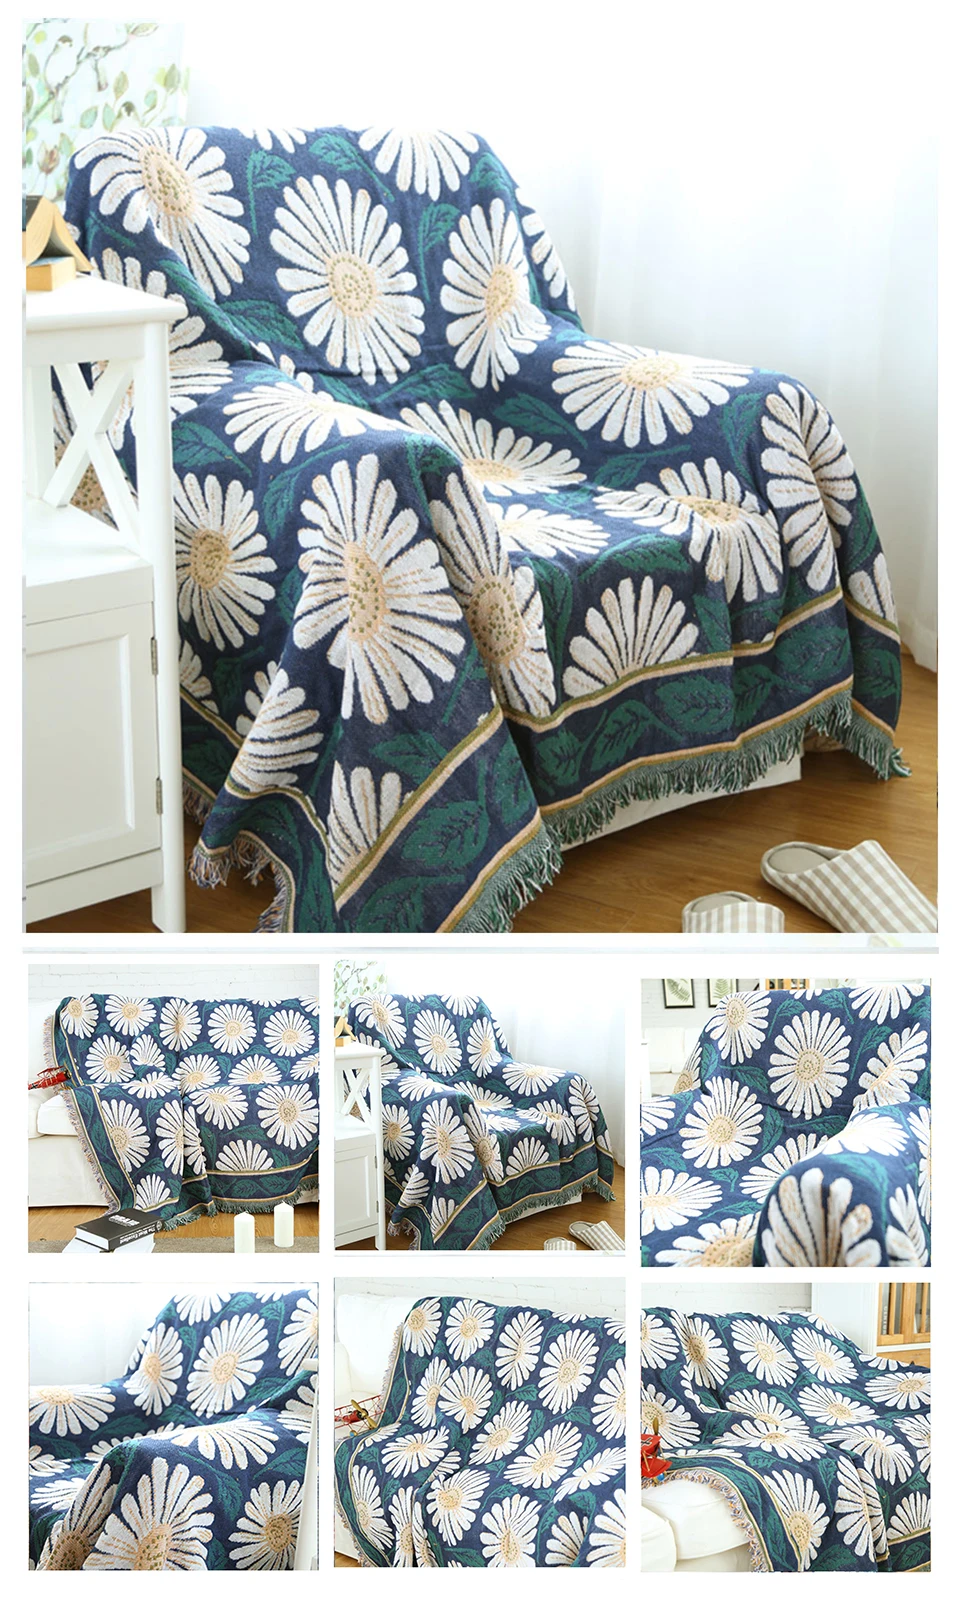 Liv-Esthete Модный американский флаг одеяло пледы одеяло с кисточками для взрослых диван спальный мешок обертывание вязаное одеяло лучший